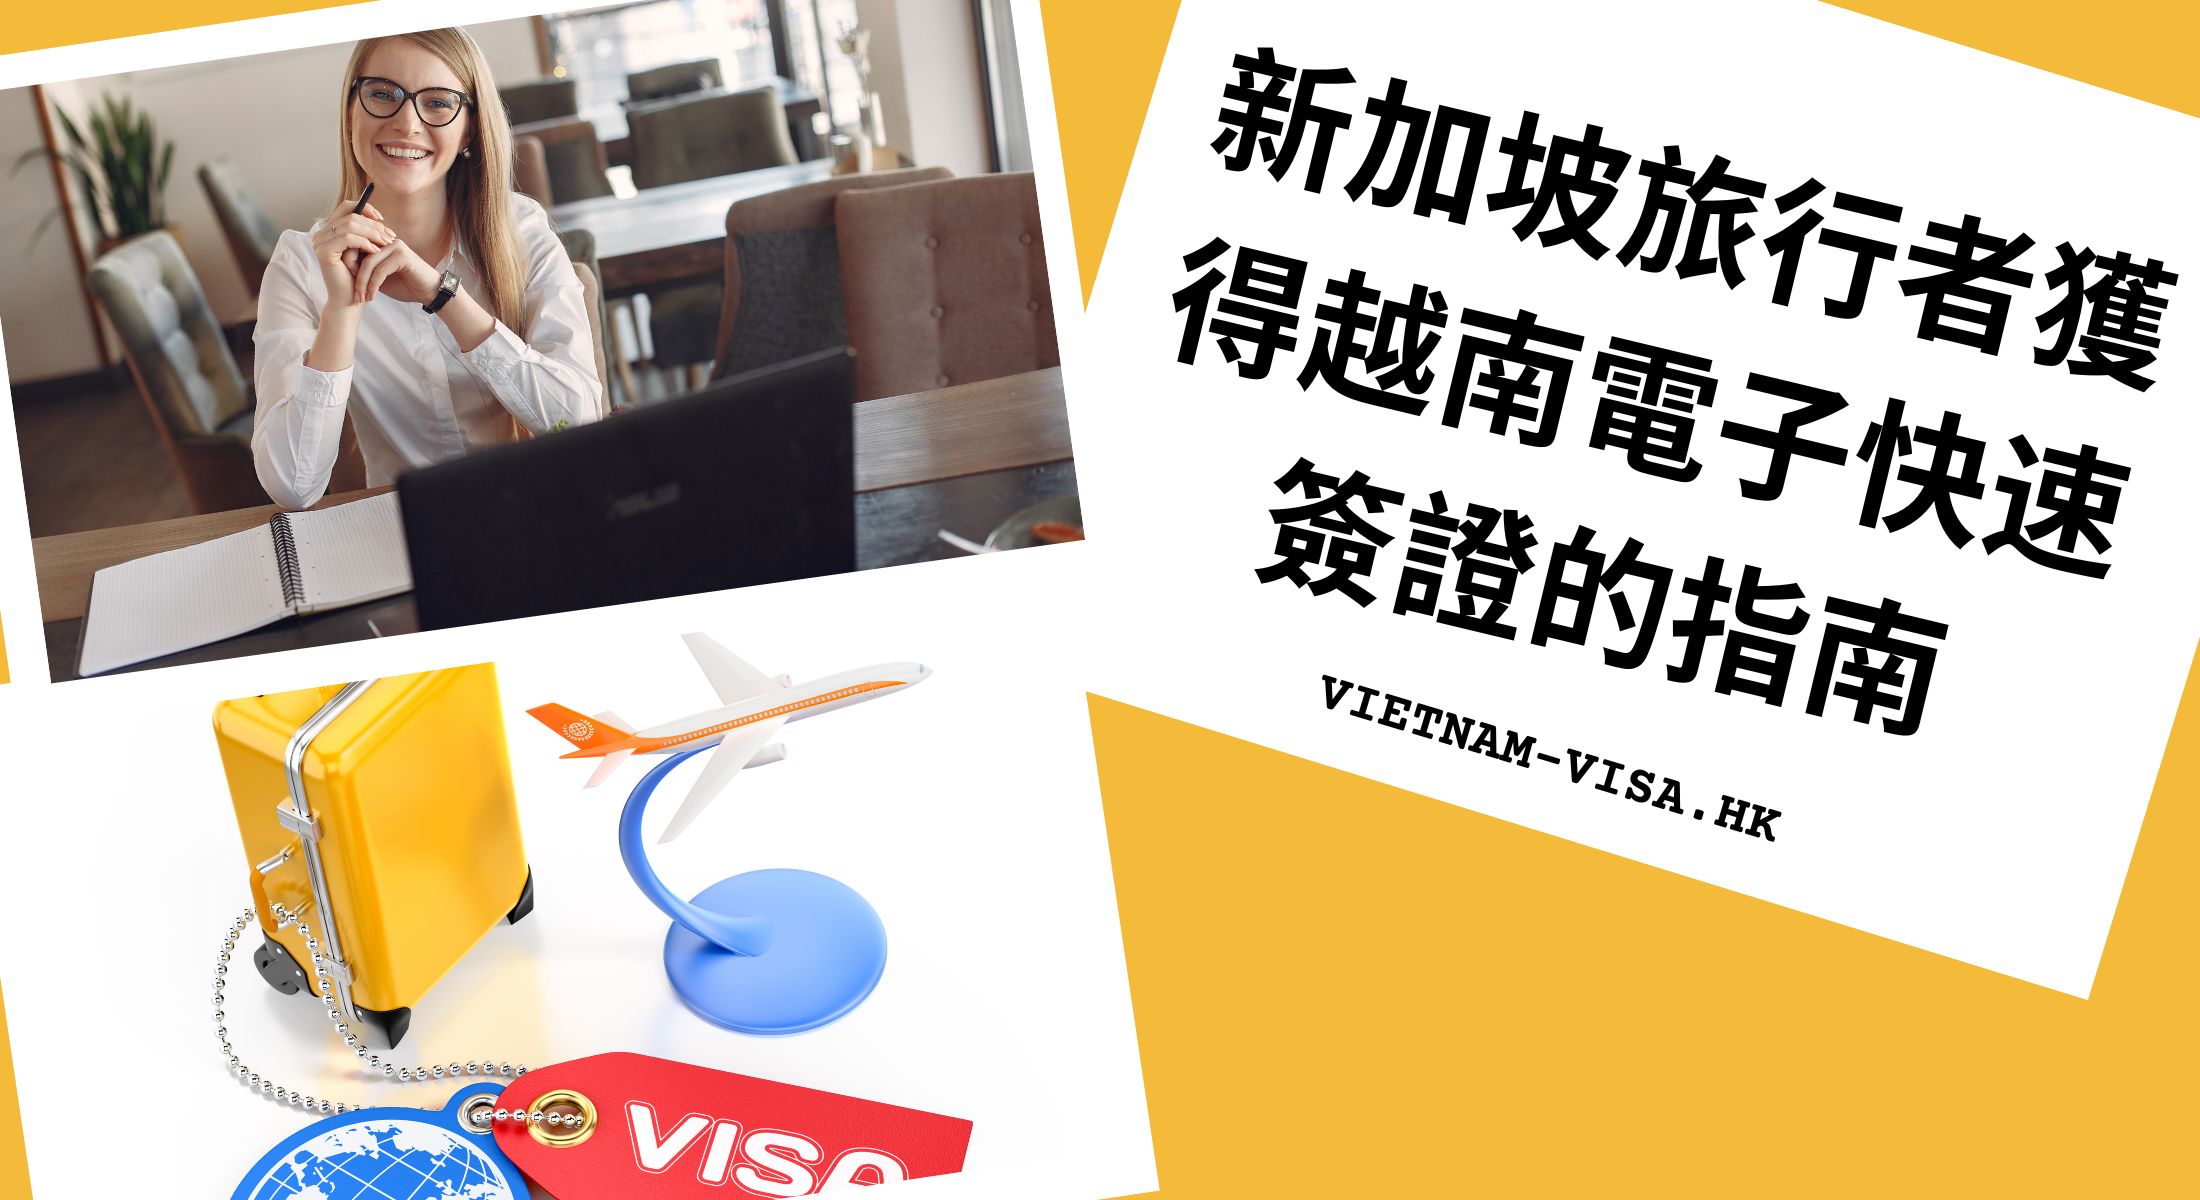 新加坡旅行者獲得越南電子快速簽證的指南